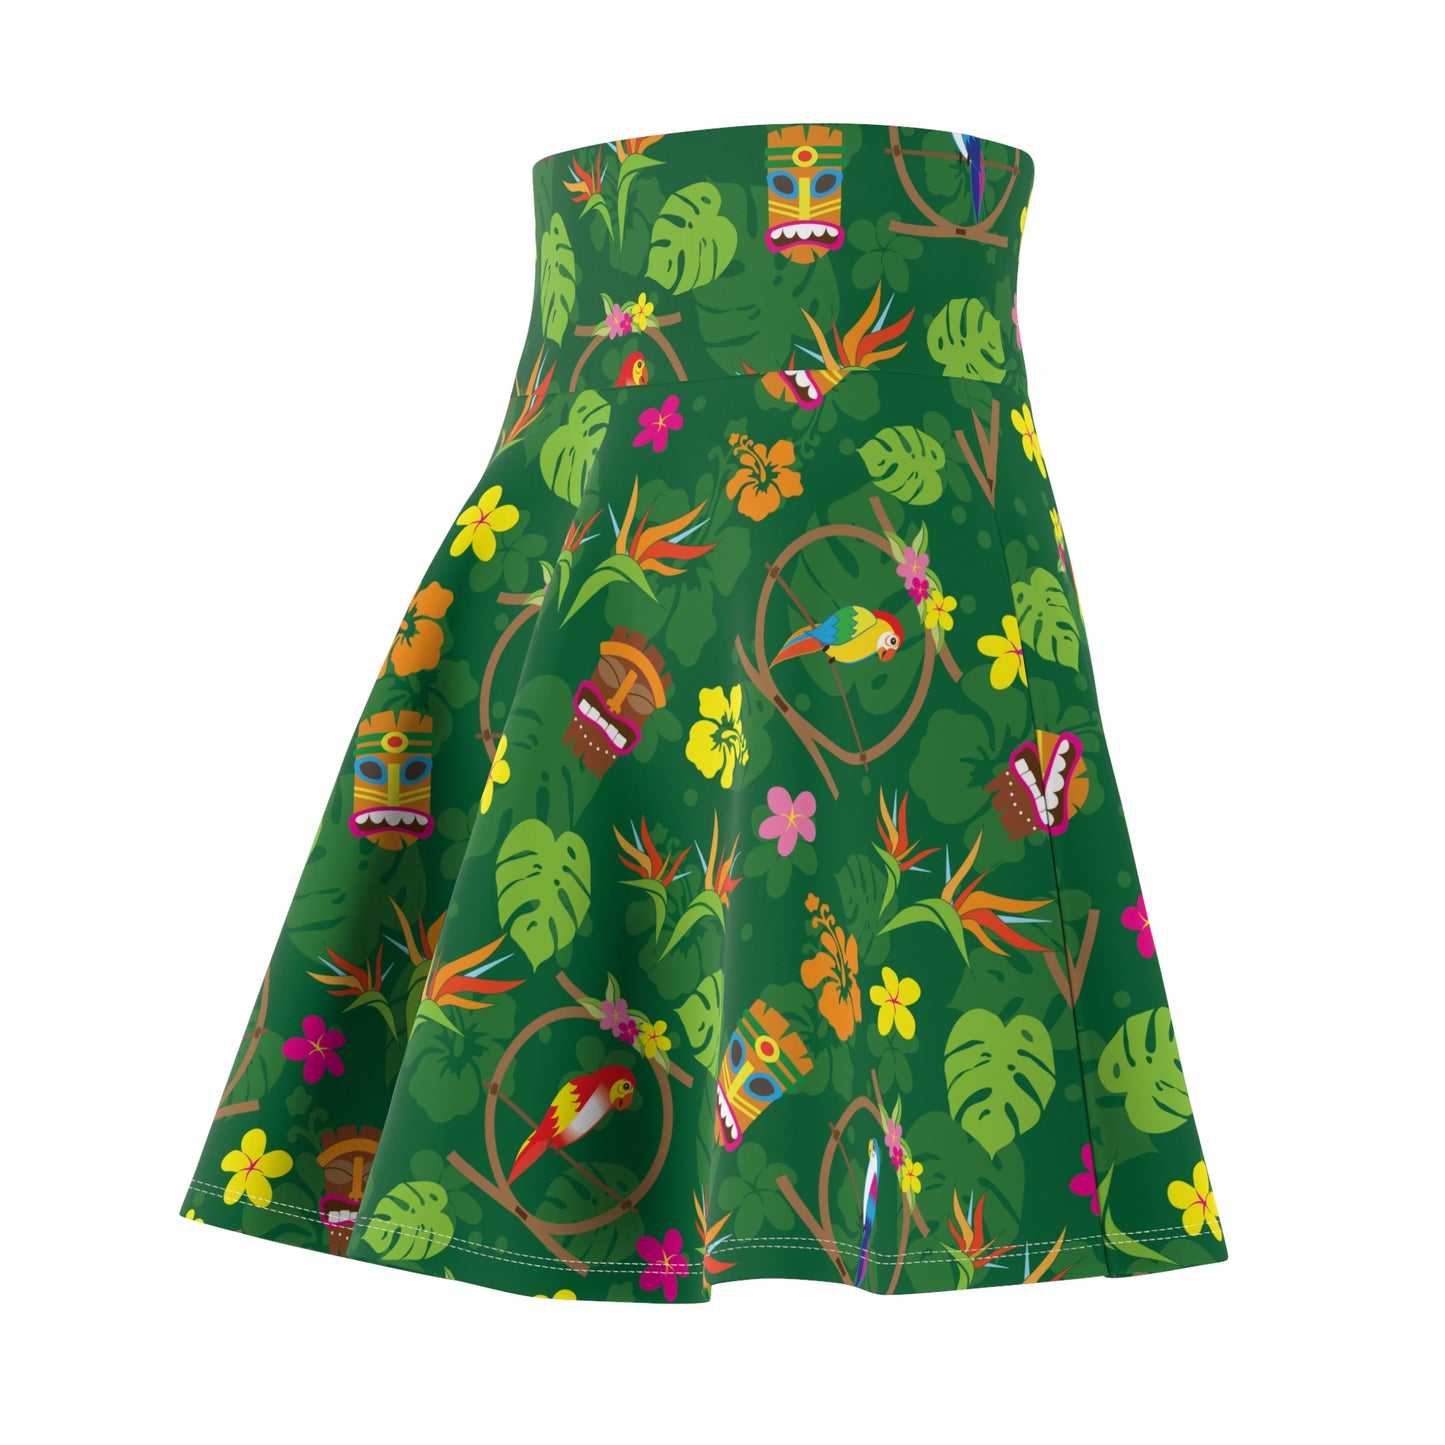 Enchanted Tiki Tropical Room Women's Skater Skirt (AOP) - Green